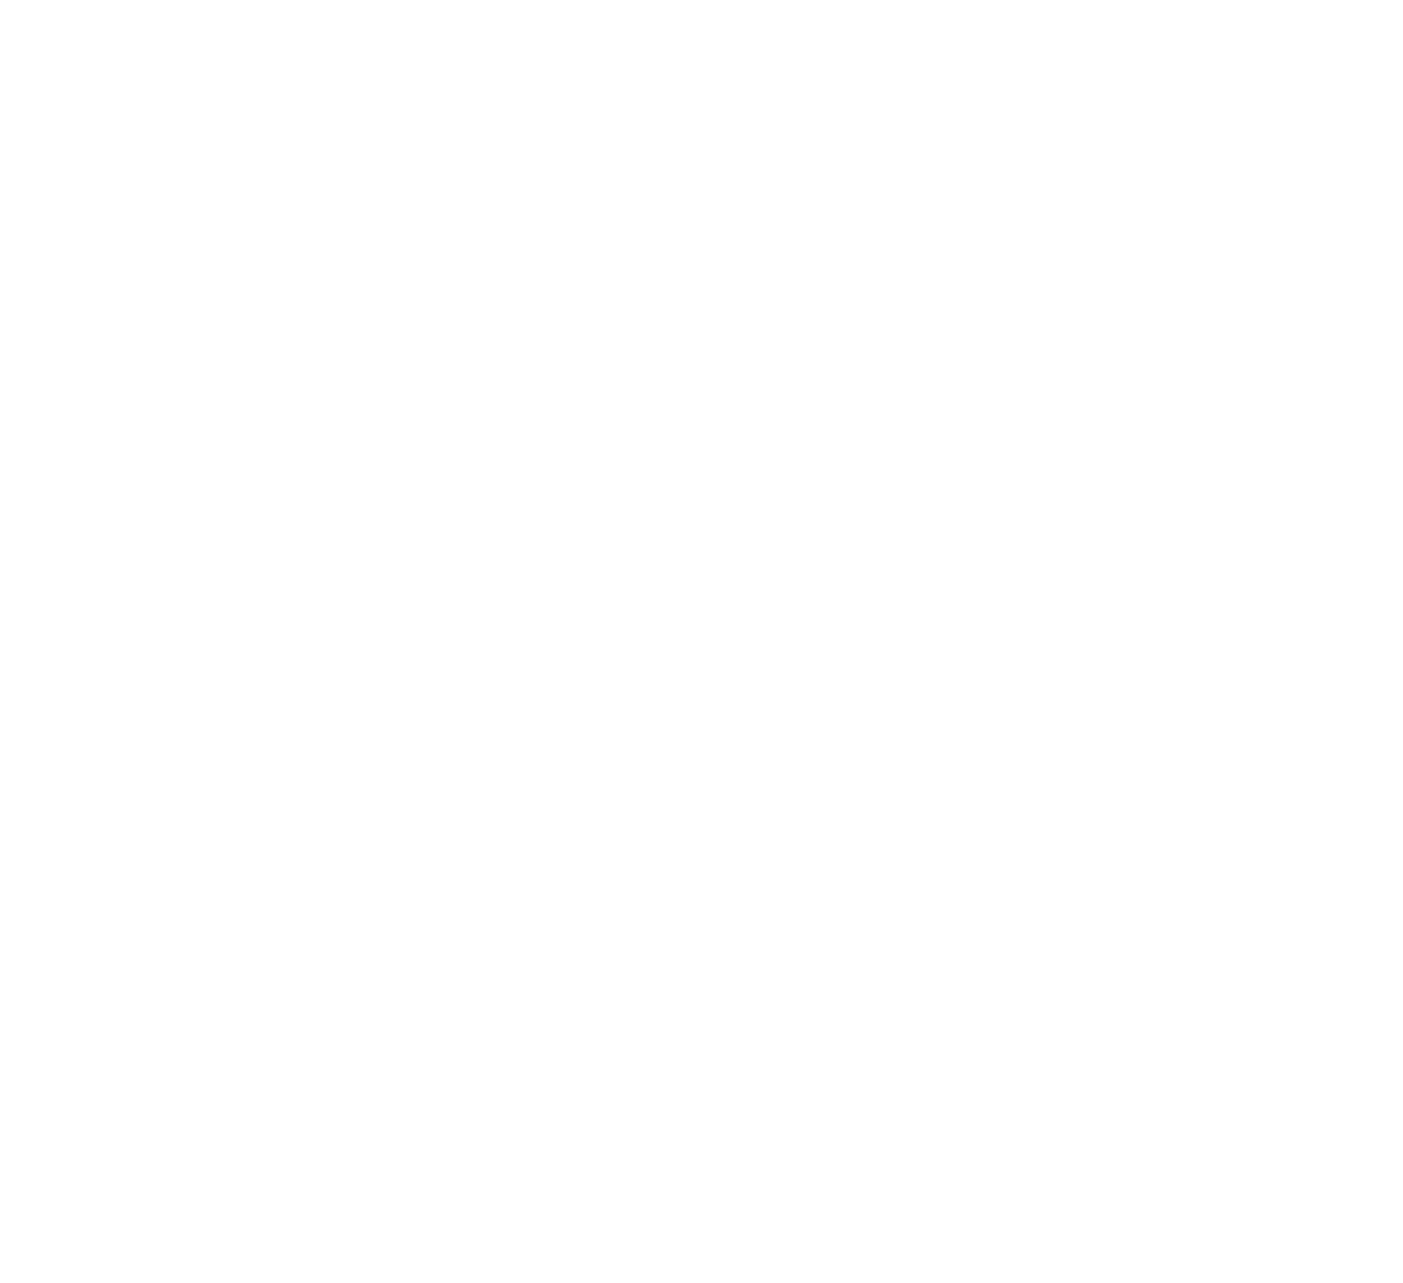 DAAS Developers